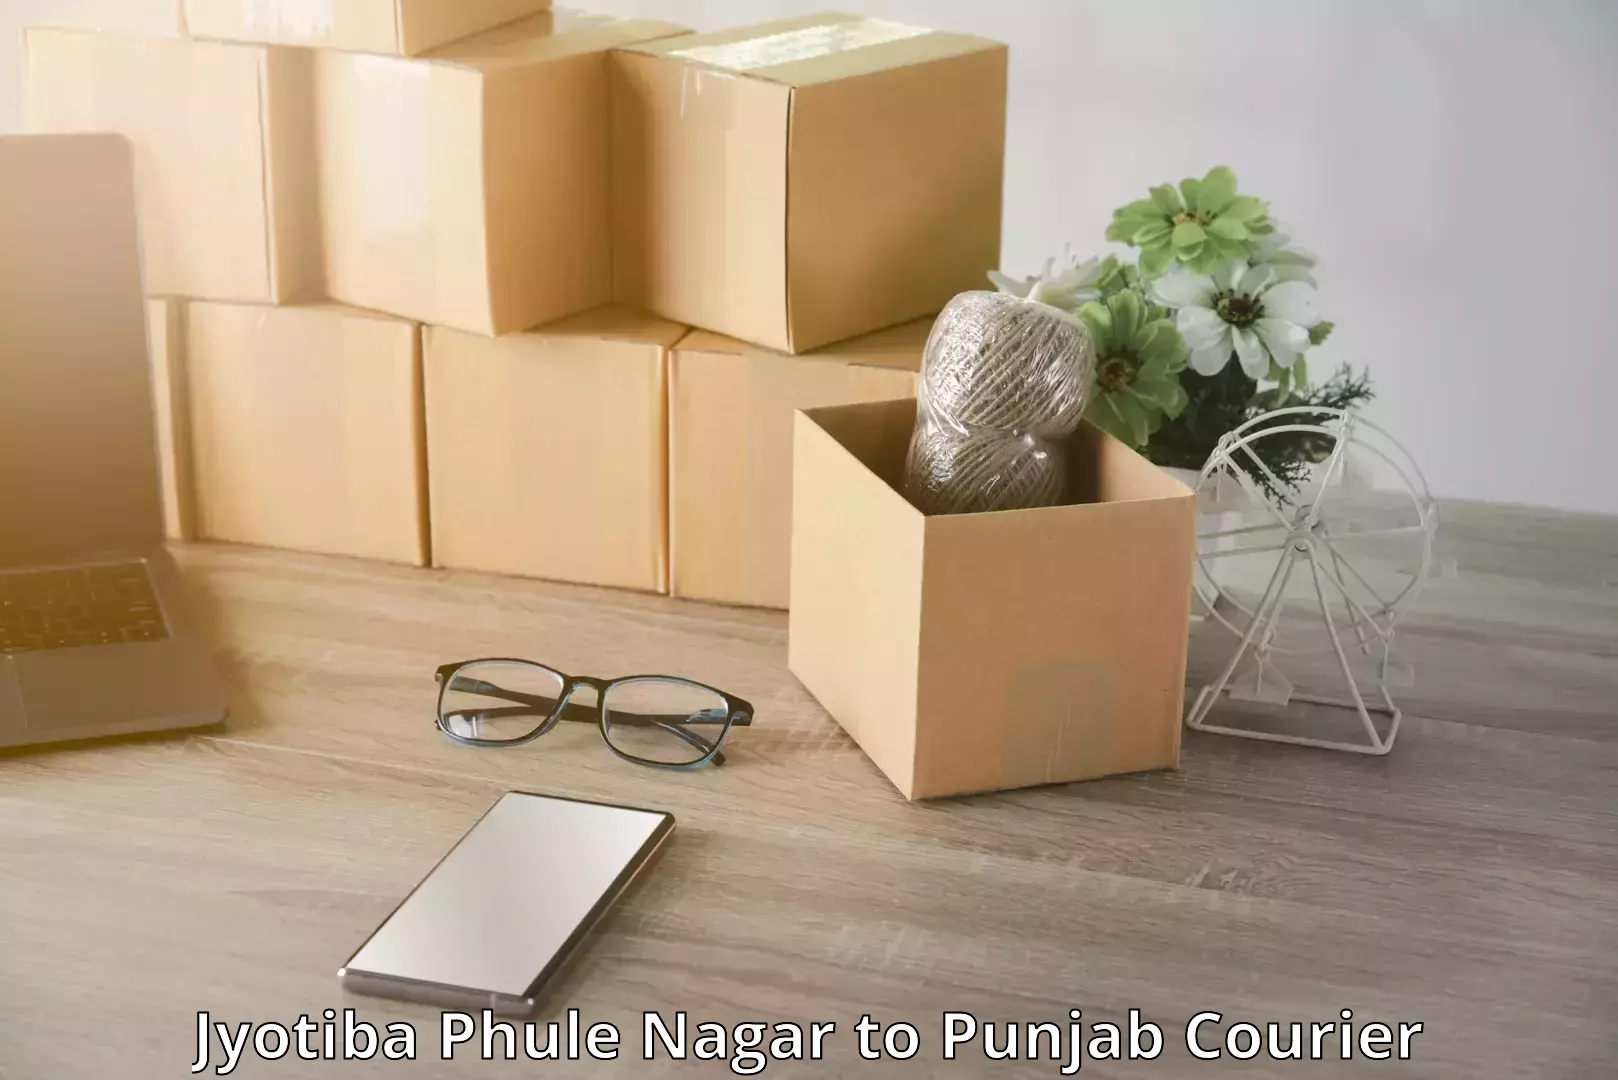 Luggage dispatch service Jyotiba Phule Nagar to Punjab